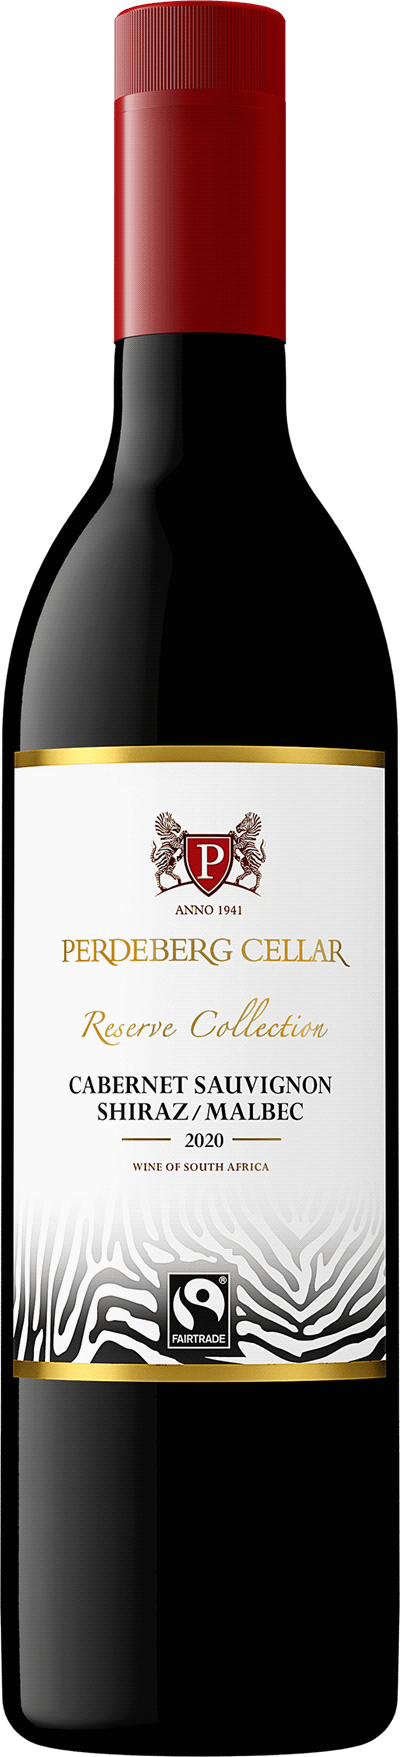 Perdeberg Cellar Reserve Collection Cabernet Sauvignon Shiraz Malbec